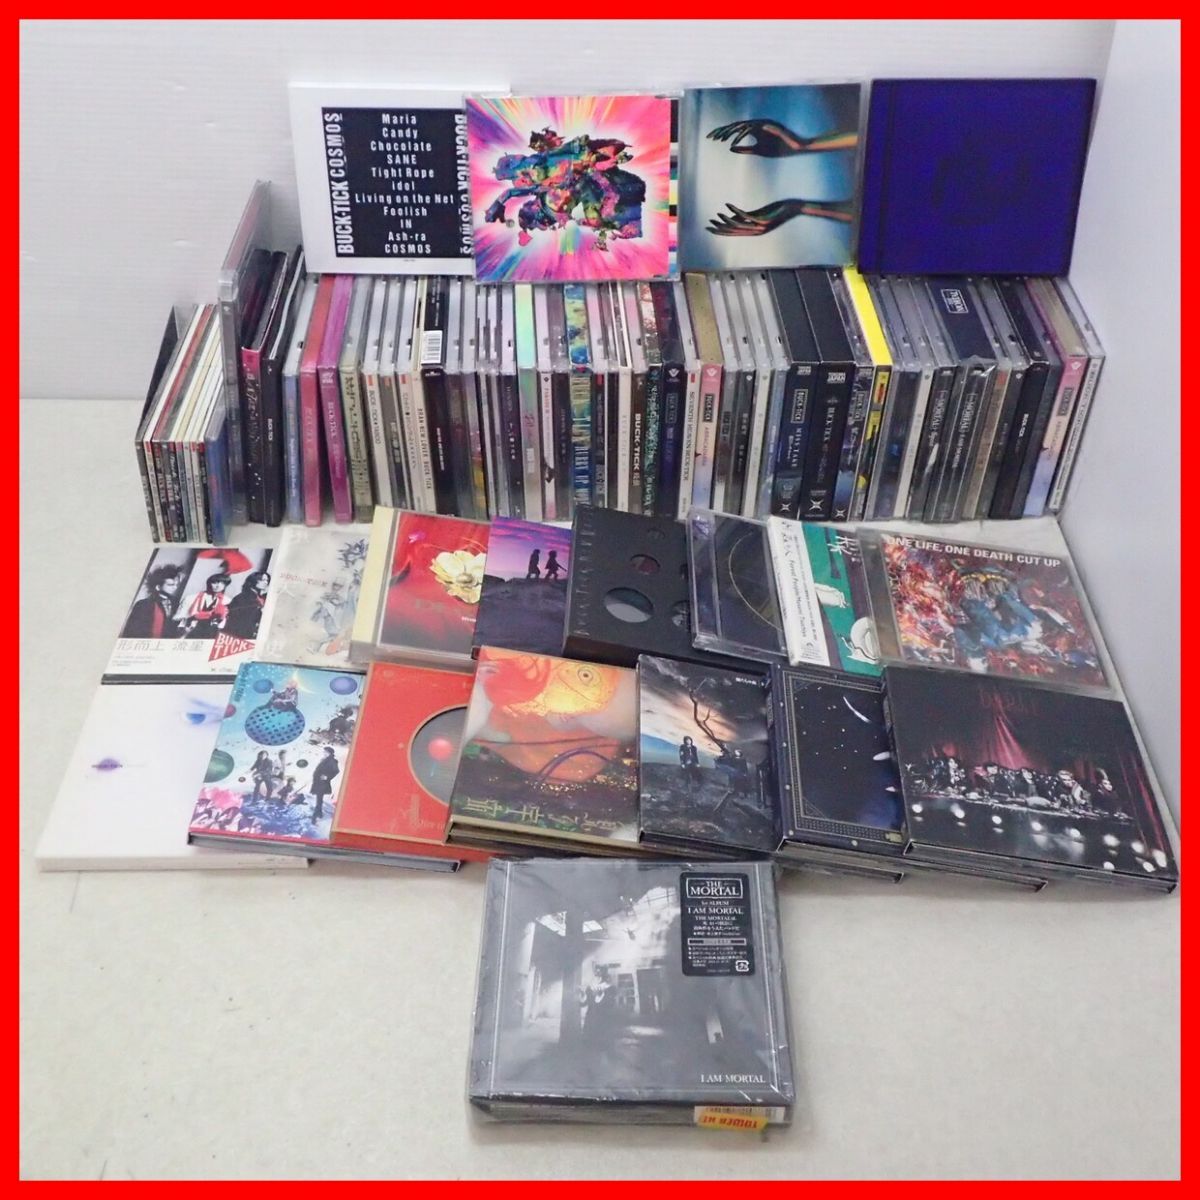 *BUCK-TICK Sakurai ..CD... дыра - ключ /THE MORTAL/ love. планета и т.п. совместно 62 листов и больше + диск частичная недостача иметь CD много комплект bakchik[20